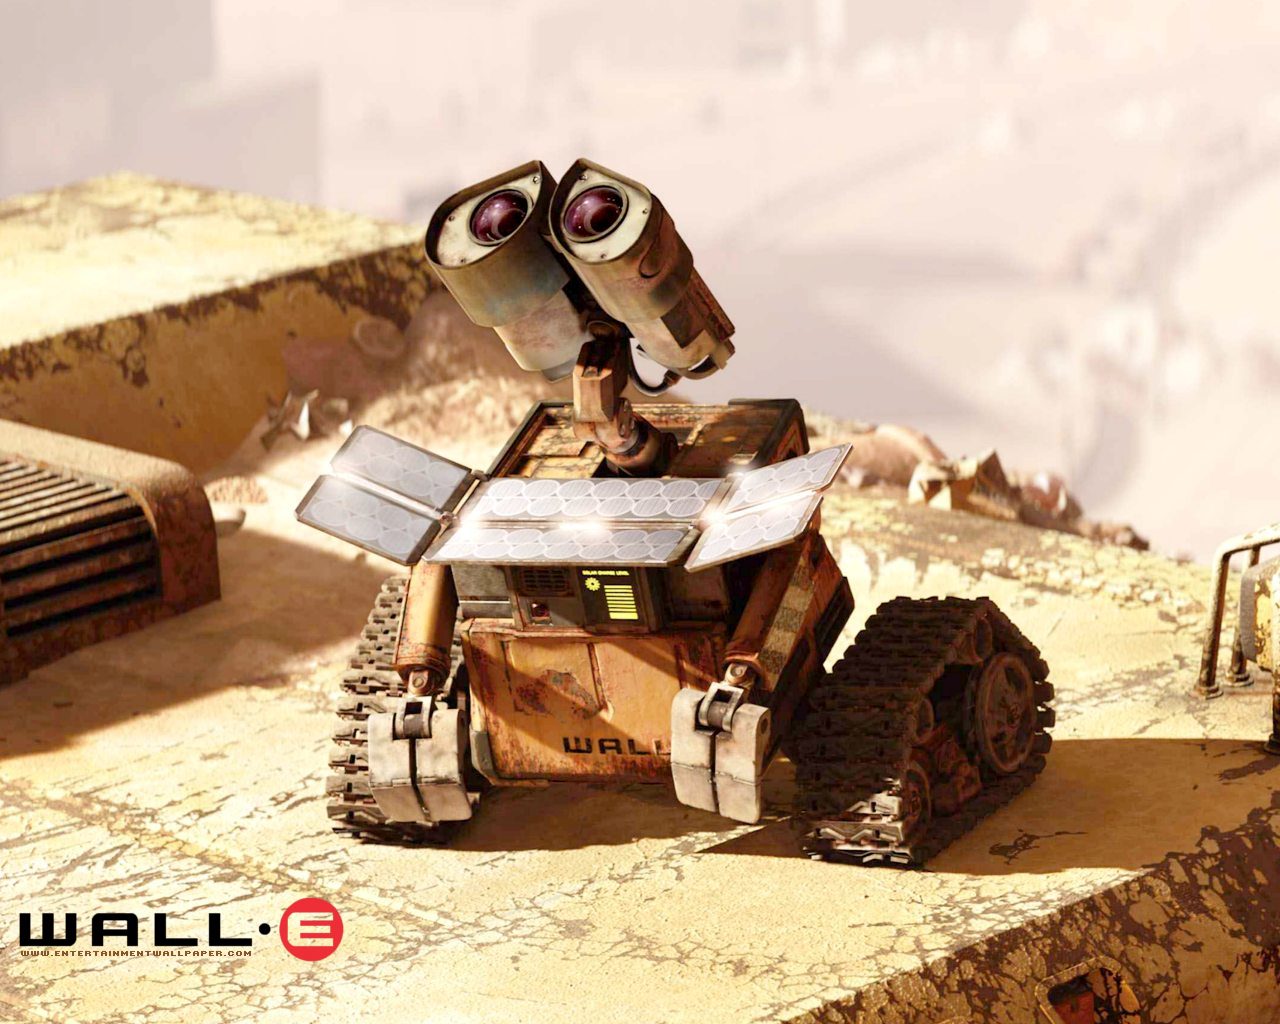 壁纸1280x1024星际总动员 WALL E 迪士尼和皮克斯出品的动画片 壁纸17壁纸 《星际总动员》(WA壁纸 《星际总动员》(WA图片 《星际总动员》(WA素材 影视壁纸 影视图库 影视图片素材桌面壁纸